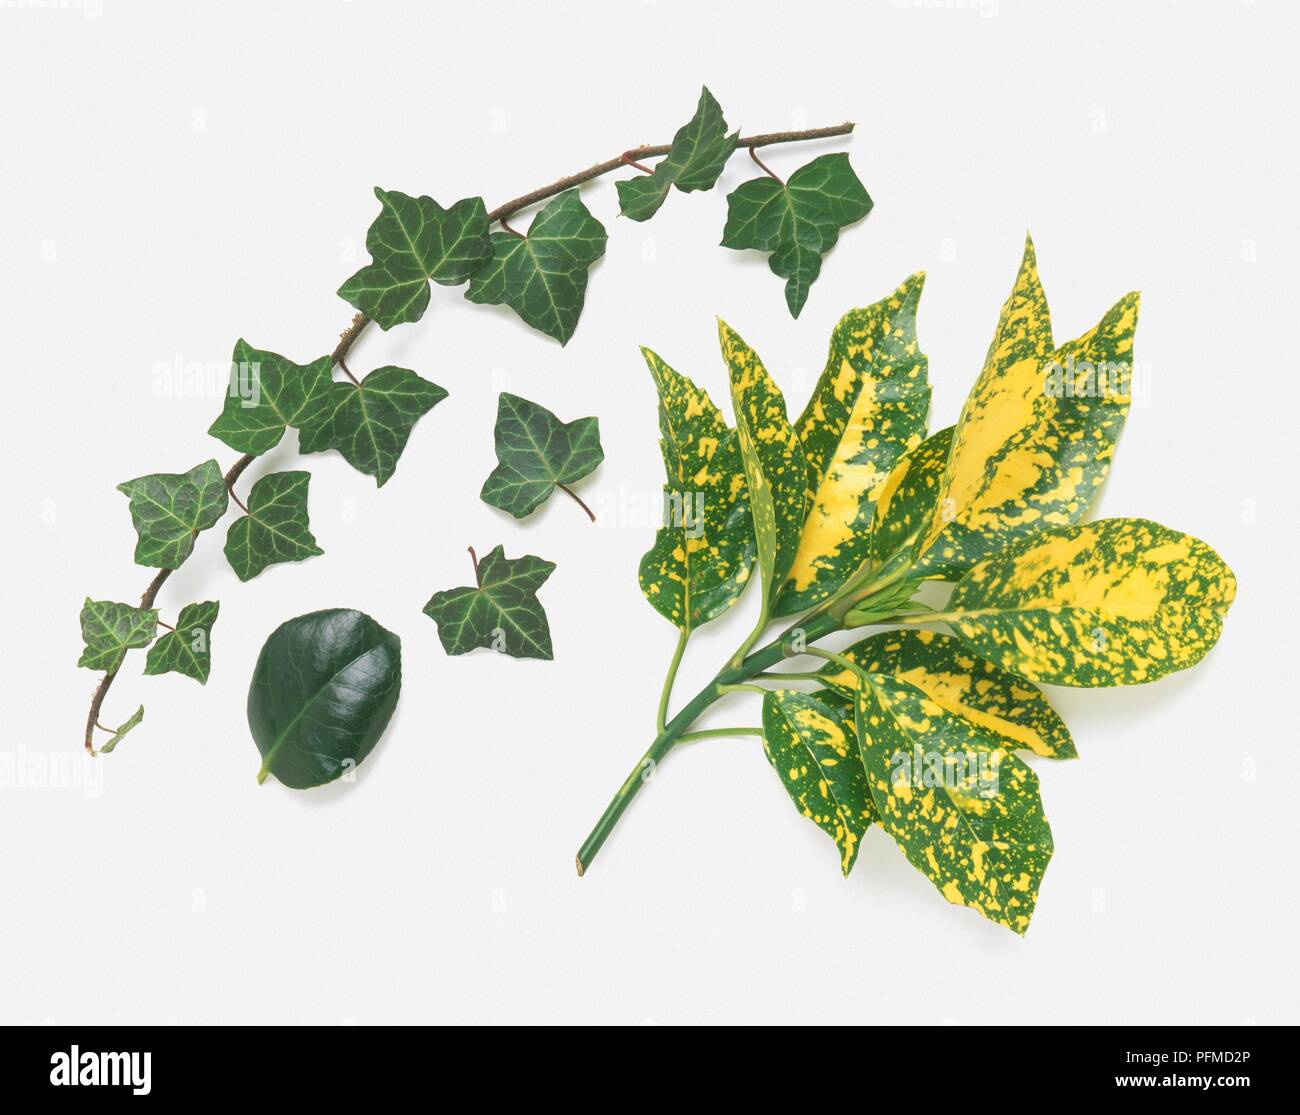 Sélection de feuilles y compris Hedera helix (lierre) et Aucuba japonica (laurel) Banque D'Images